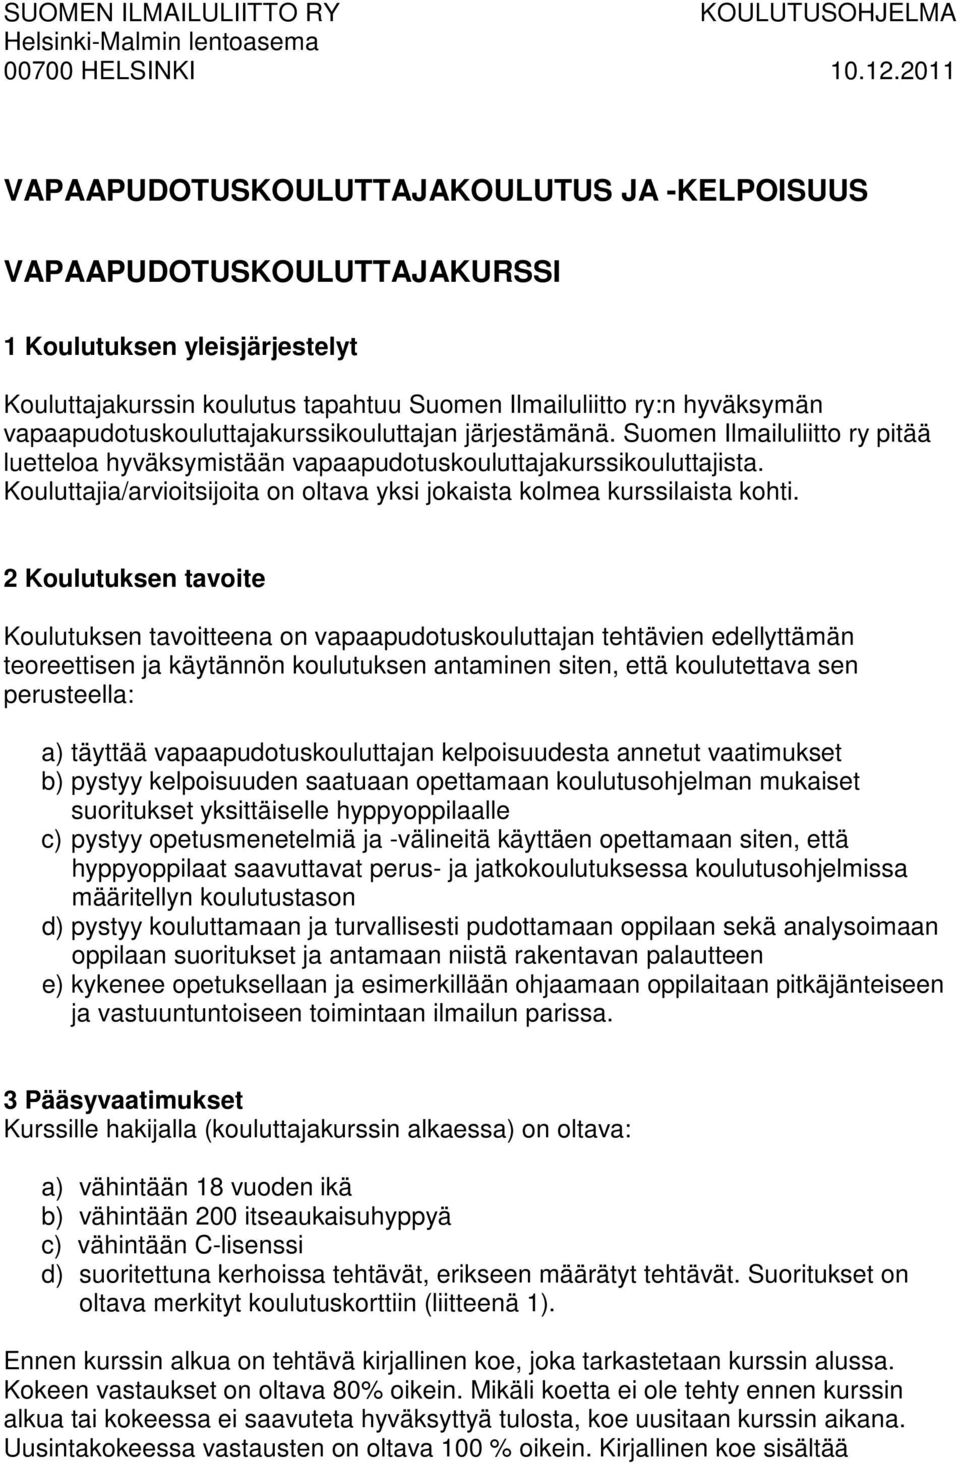 vapaapudotuskouluttajakurssikouluttajan järjestämänä. Suomen Ilmailuliitto ry pitää luetteloa hyväksymistään vapaapudotuskouluttajakurssikouluttajista.